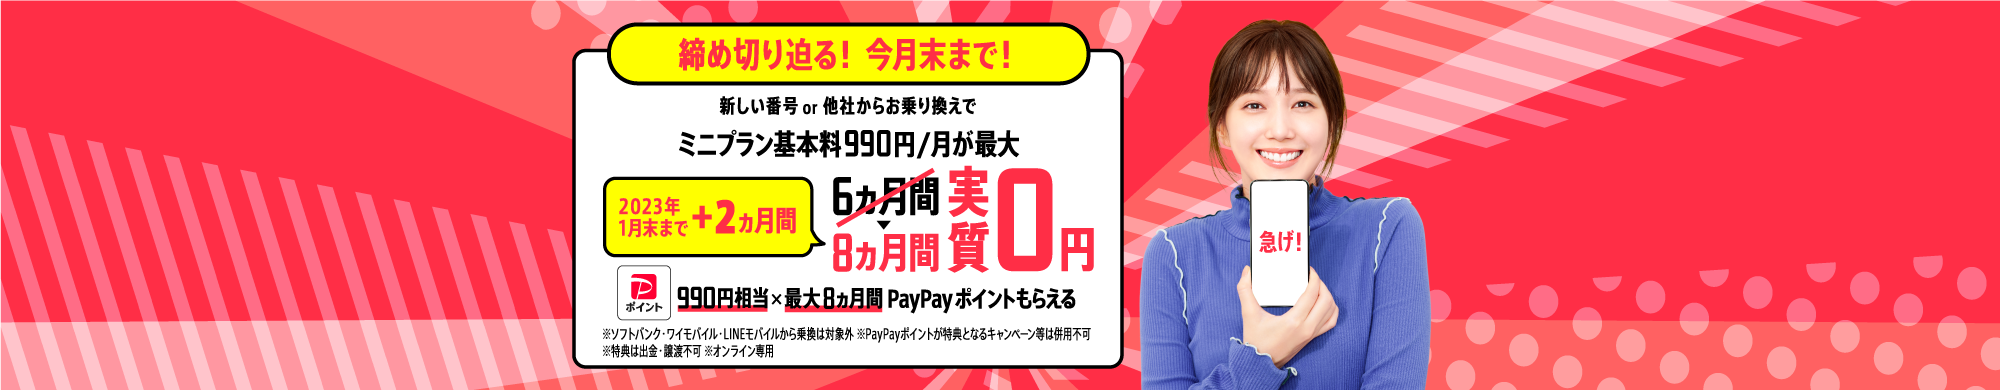 キャンペーン期間中に、LINEMOの「ミニプラン」を他社からの乗り換えで契約もしくは新しい番号で契約すると、PayPayポイント990円相当を6カ月間毎月プレゼントします。